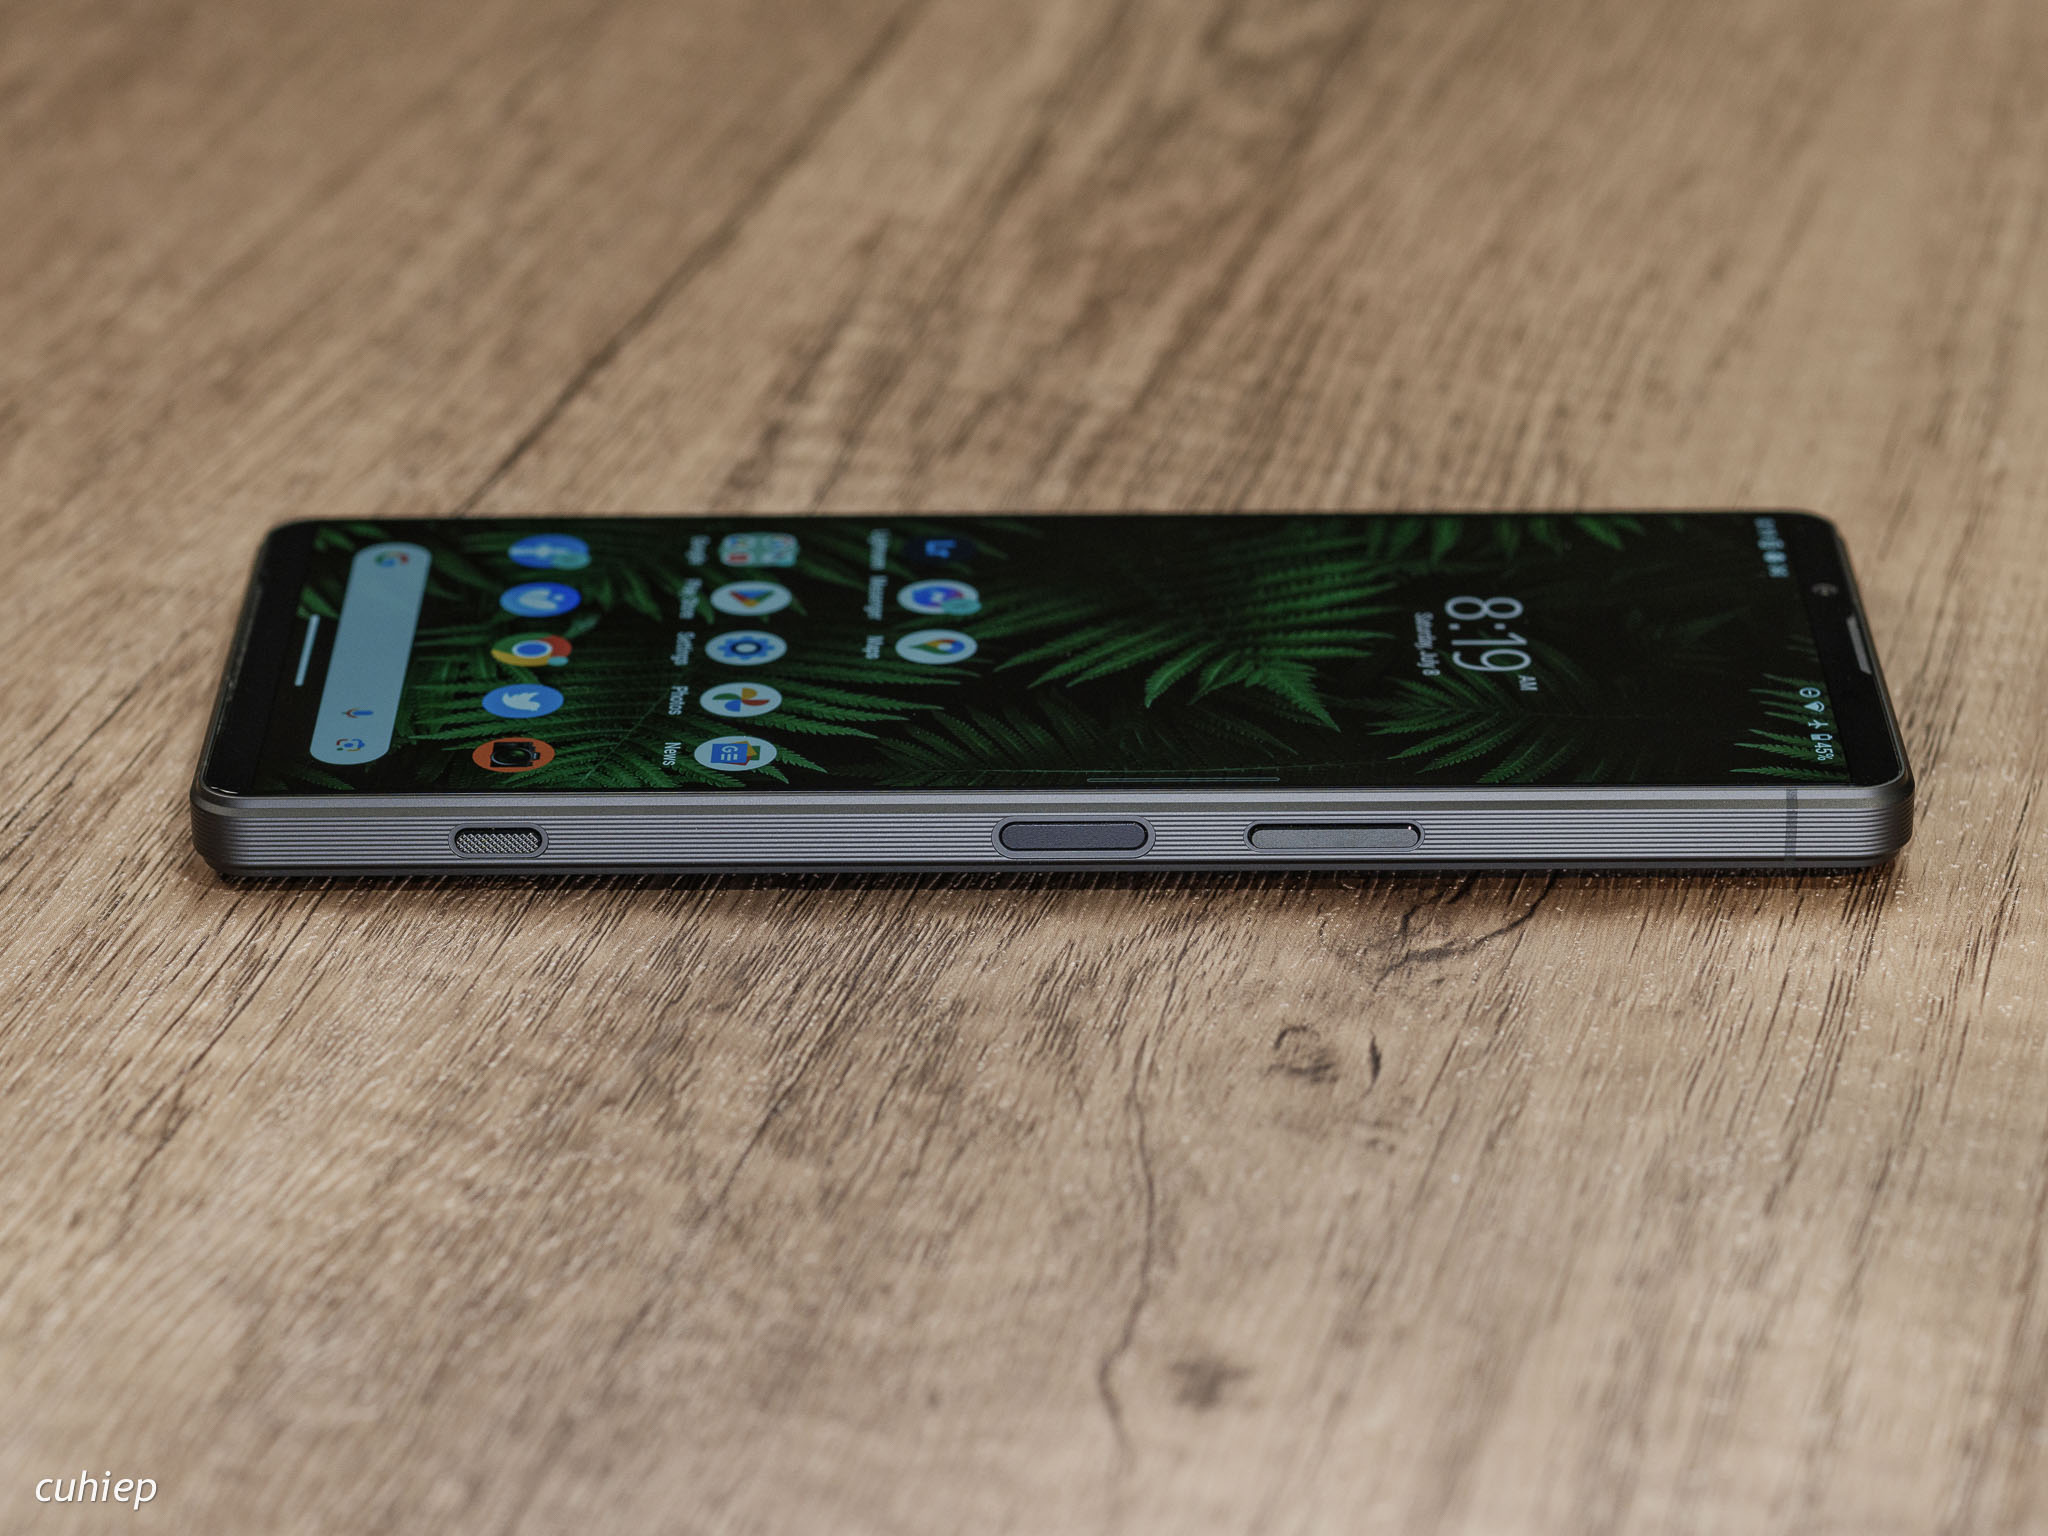 Sony Xperia 1 V hoàn thiện quá đẹp, vừa tay, hơi sắc